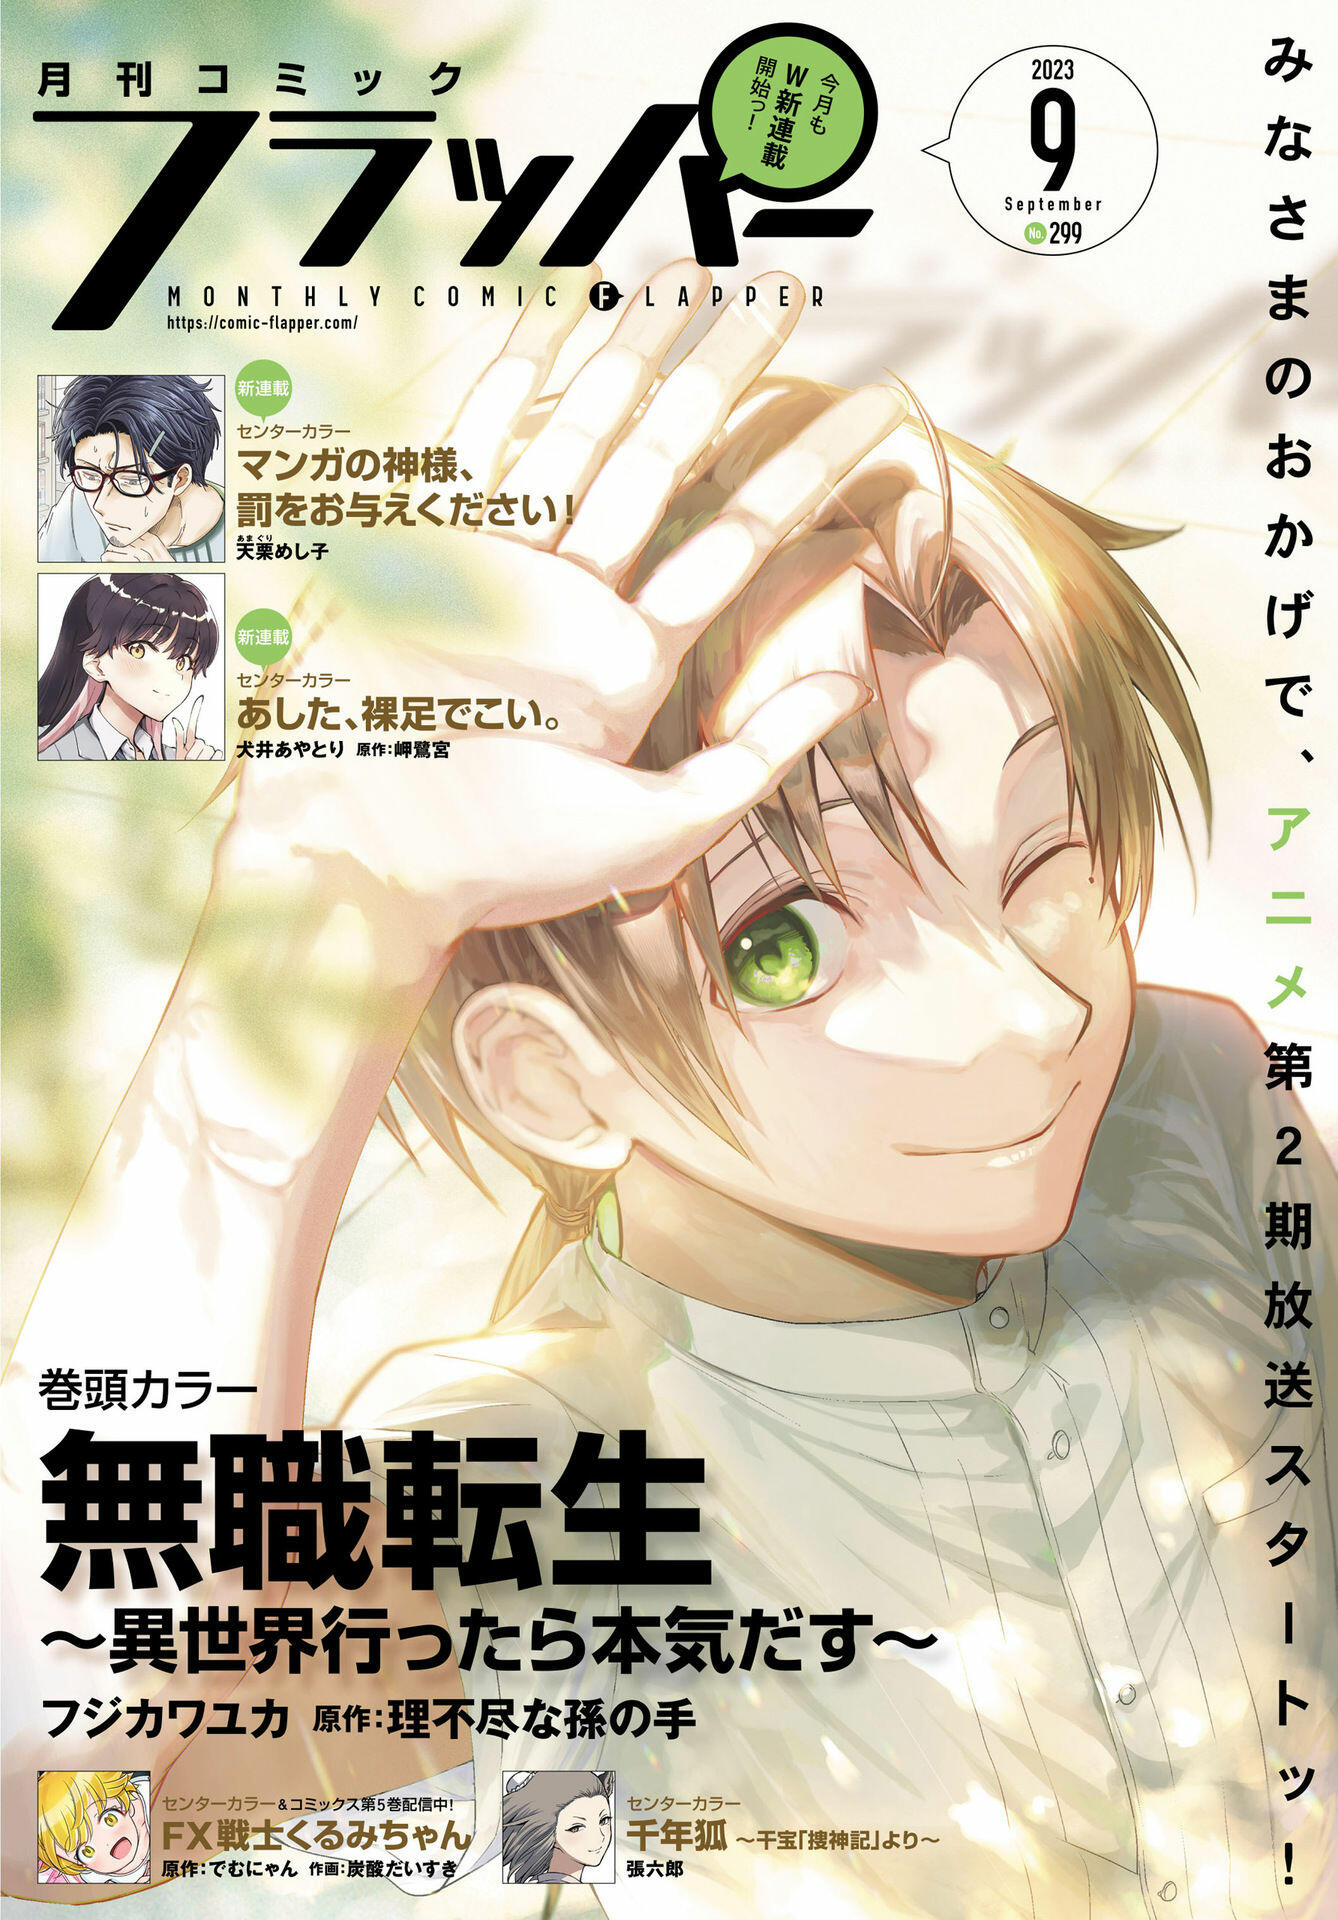 Read Mushoku Tensei Manga Online